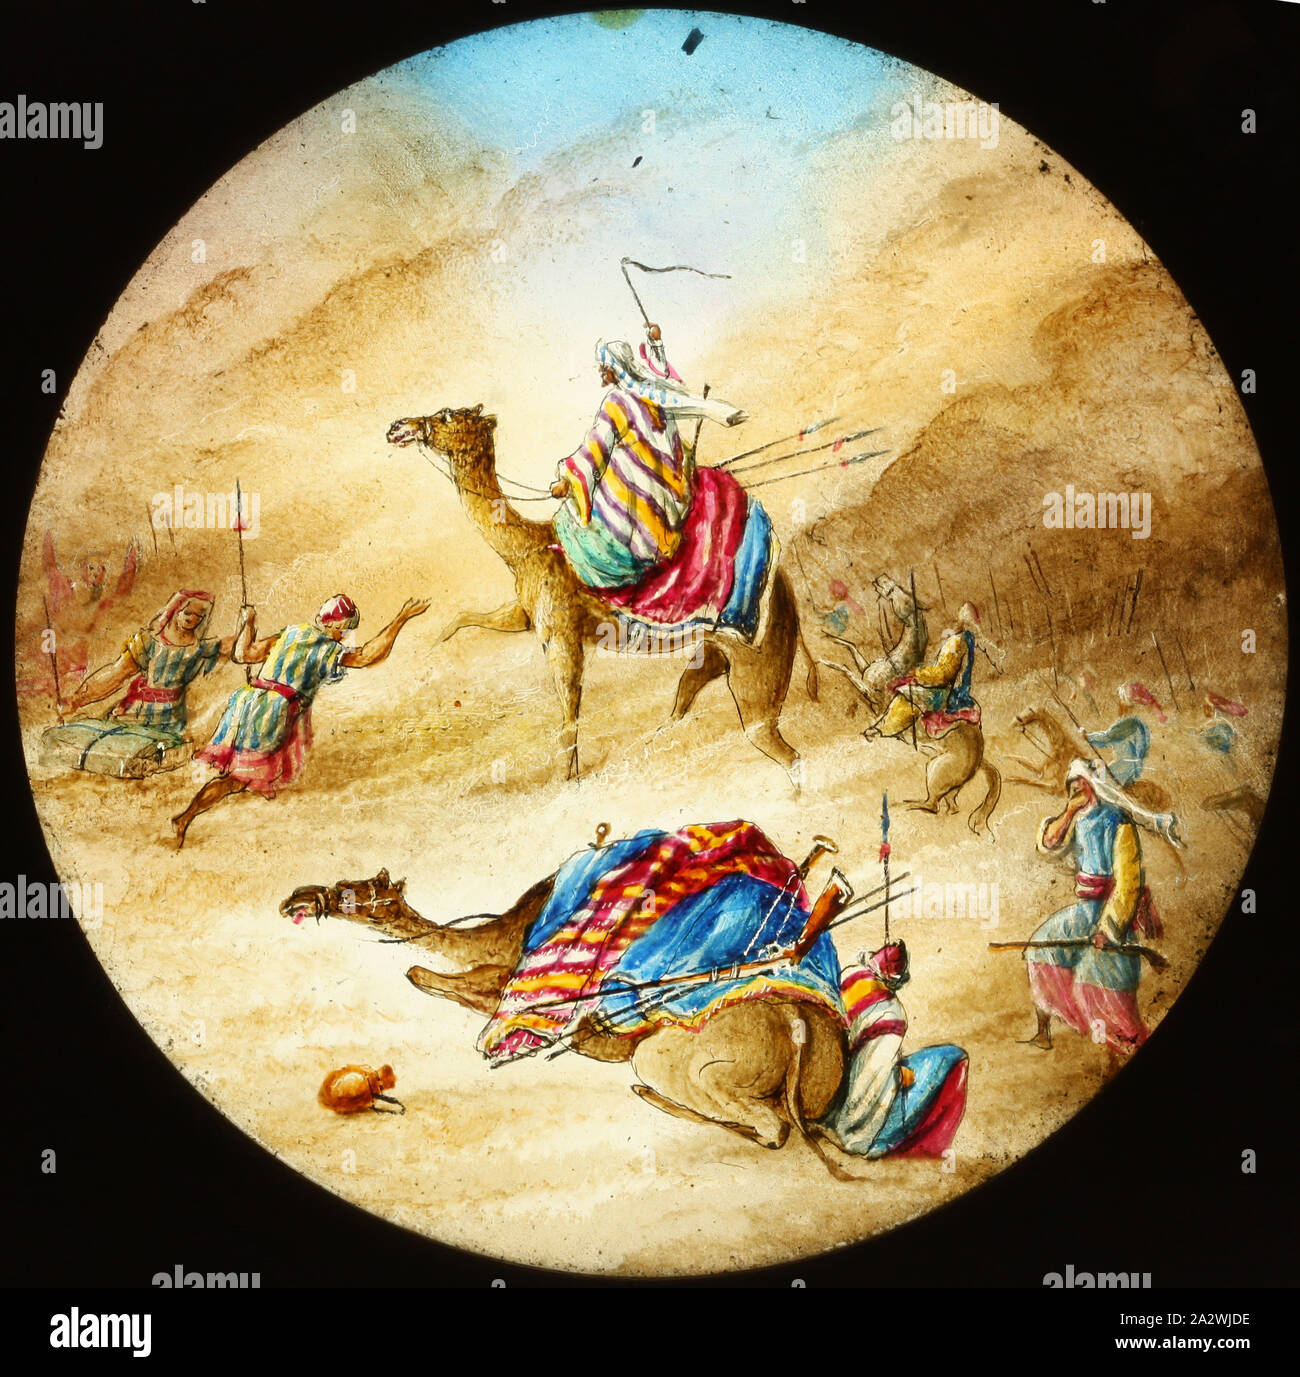 Laterne Folie - der andstorm', 1850-1900, Laterne Folie, Soldaten, einige auf Kamelen, in einem Sandsturm. Ort und Datum dargestellt sind unbekannt. Es kann ein Heiliger Krieg zeigen Stockfoto